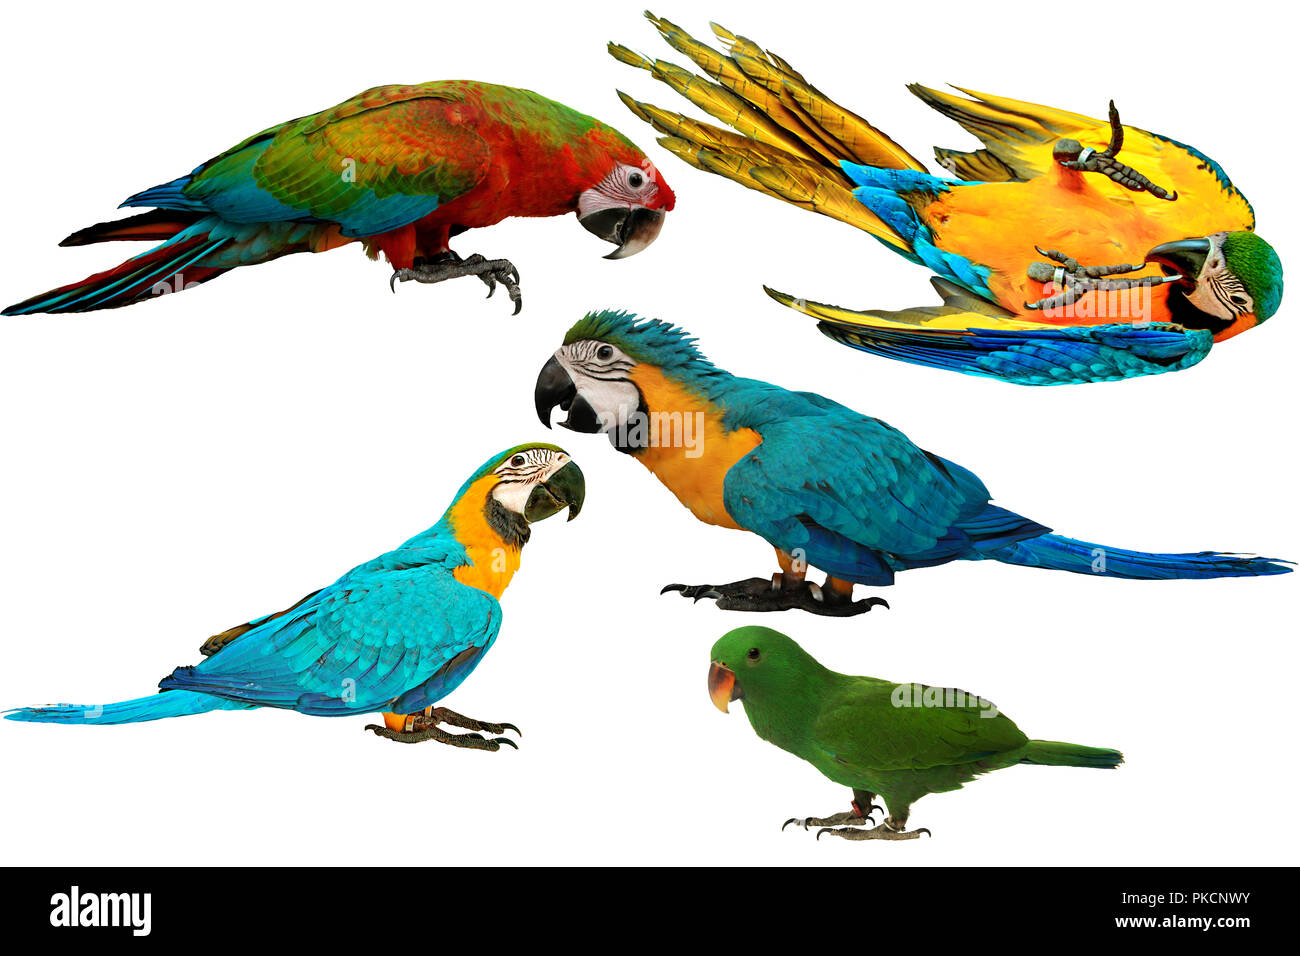 Isolato adorabile e pappagalli colorati come 2 maschio blu e giallo macaw parrot , rosso e blu macaw pappagallo e maschio pappagallo eclectus isolato su bianco bac Foto Stock